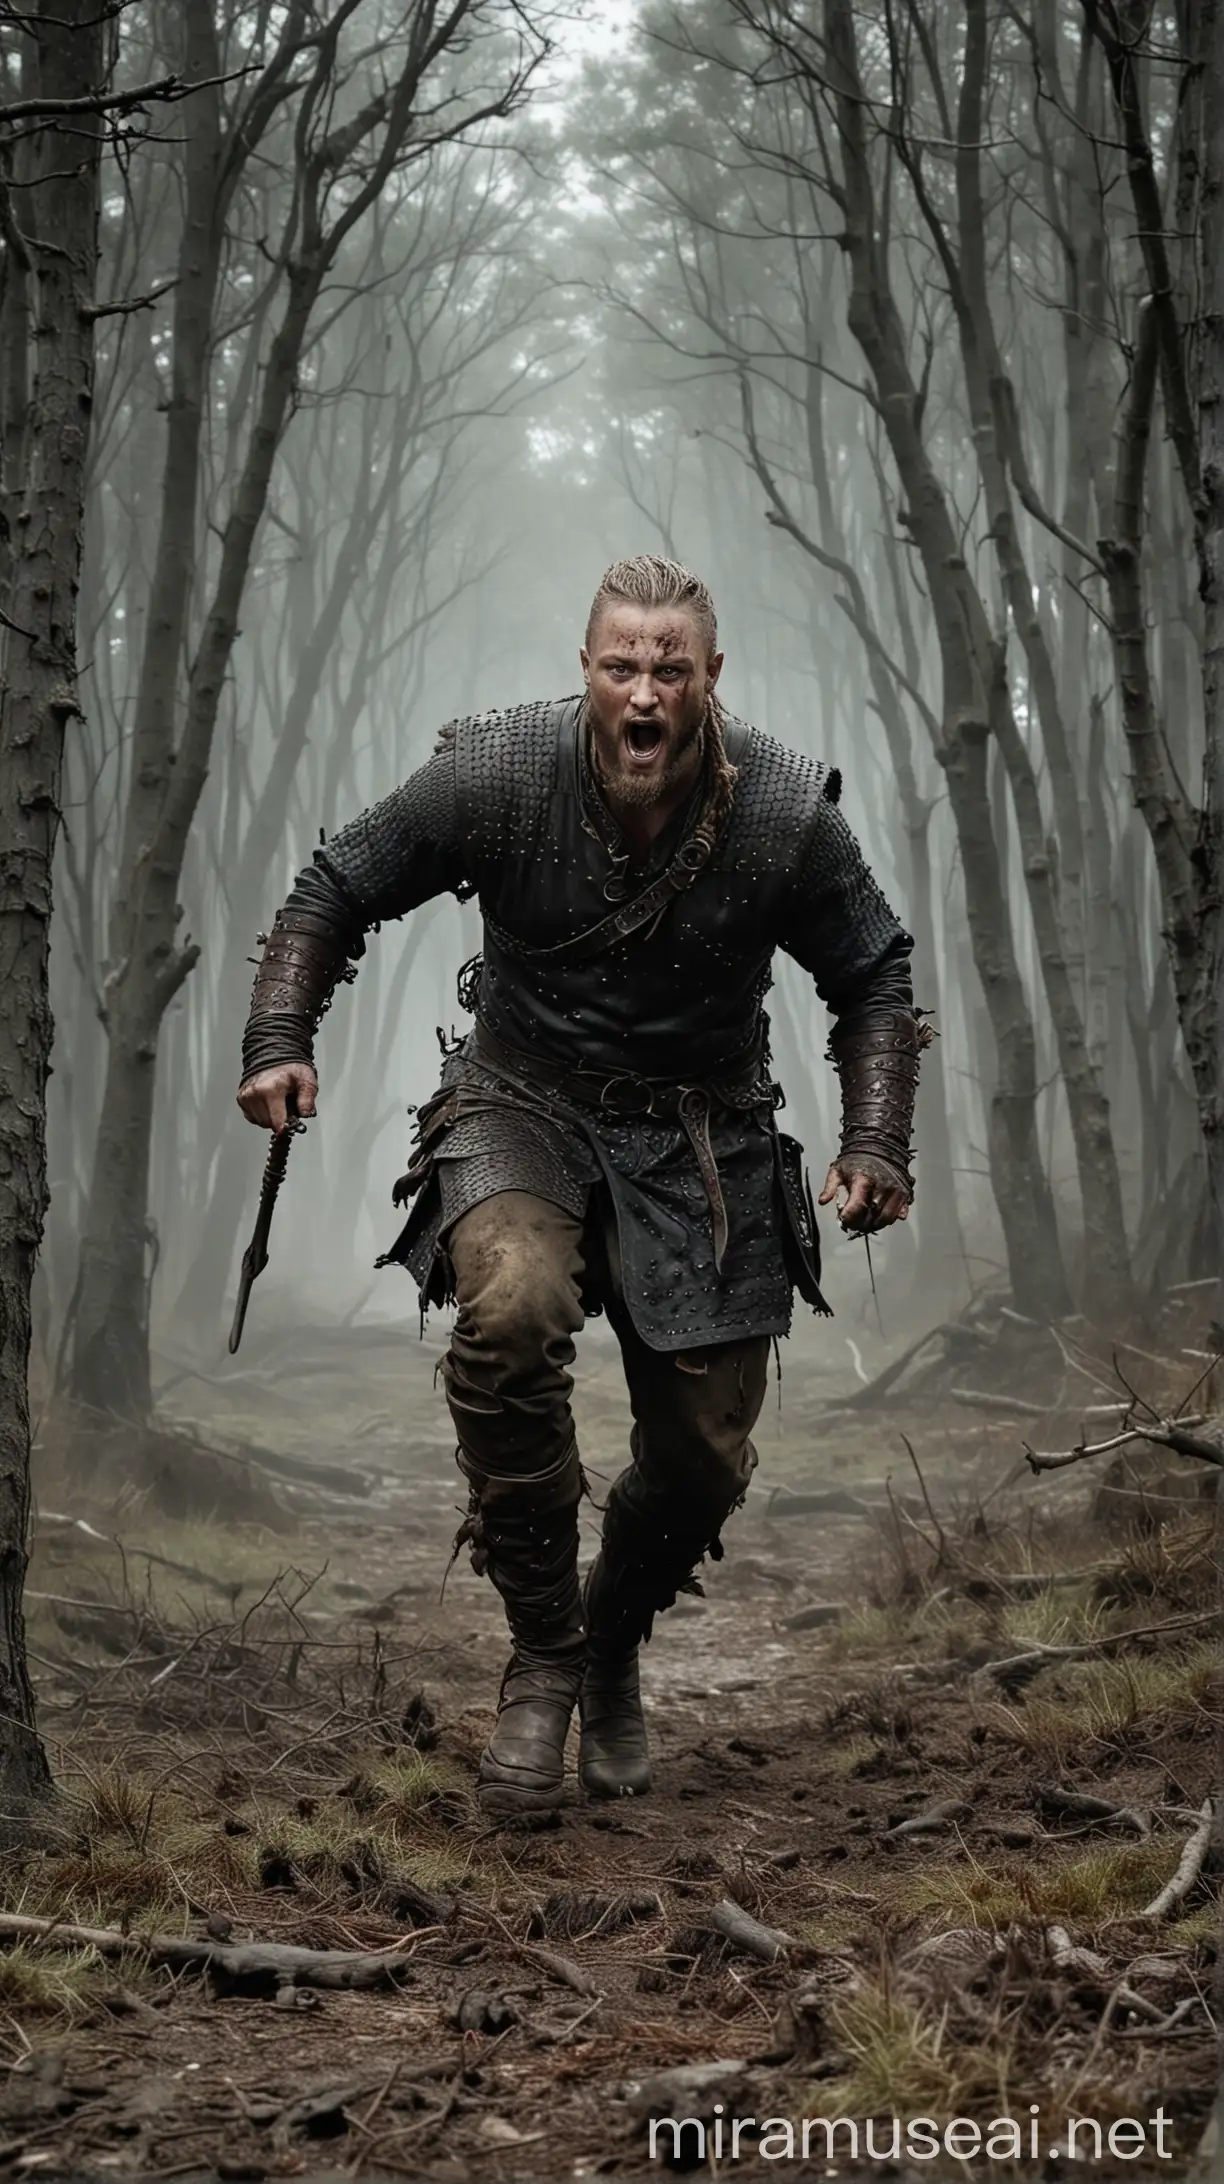 Ragnars Revenge Hyper Realistic Depiction of Battle and Bloodshed